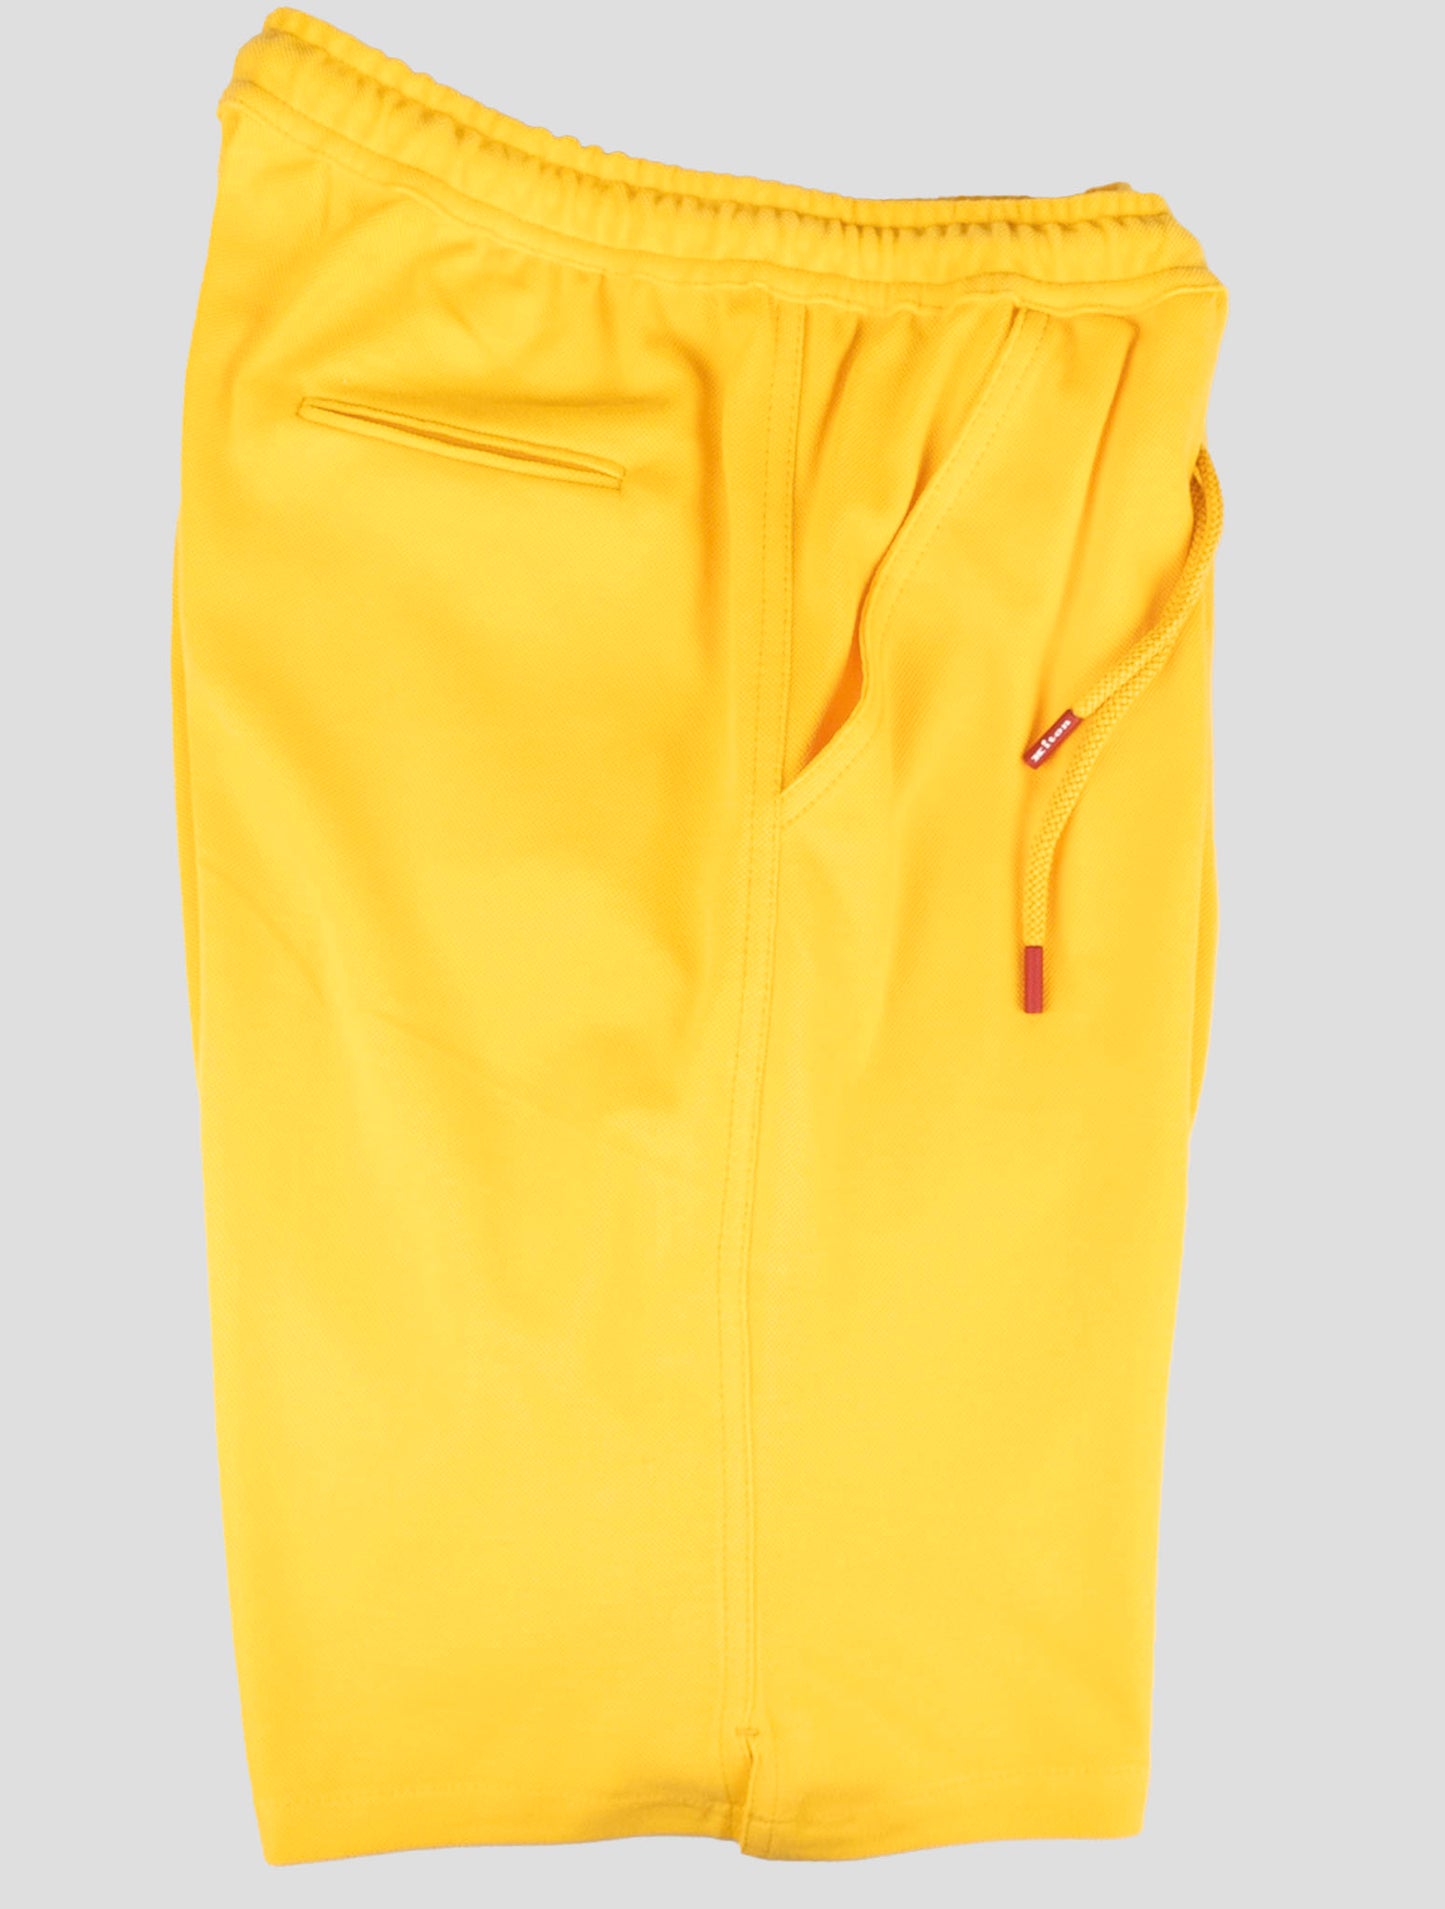 Kiton Matching Outfit-Survêtement Mariano bleu et blanc et pantalon court jaune